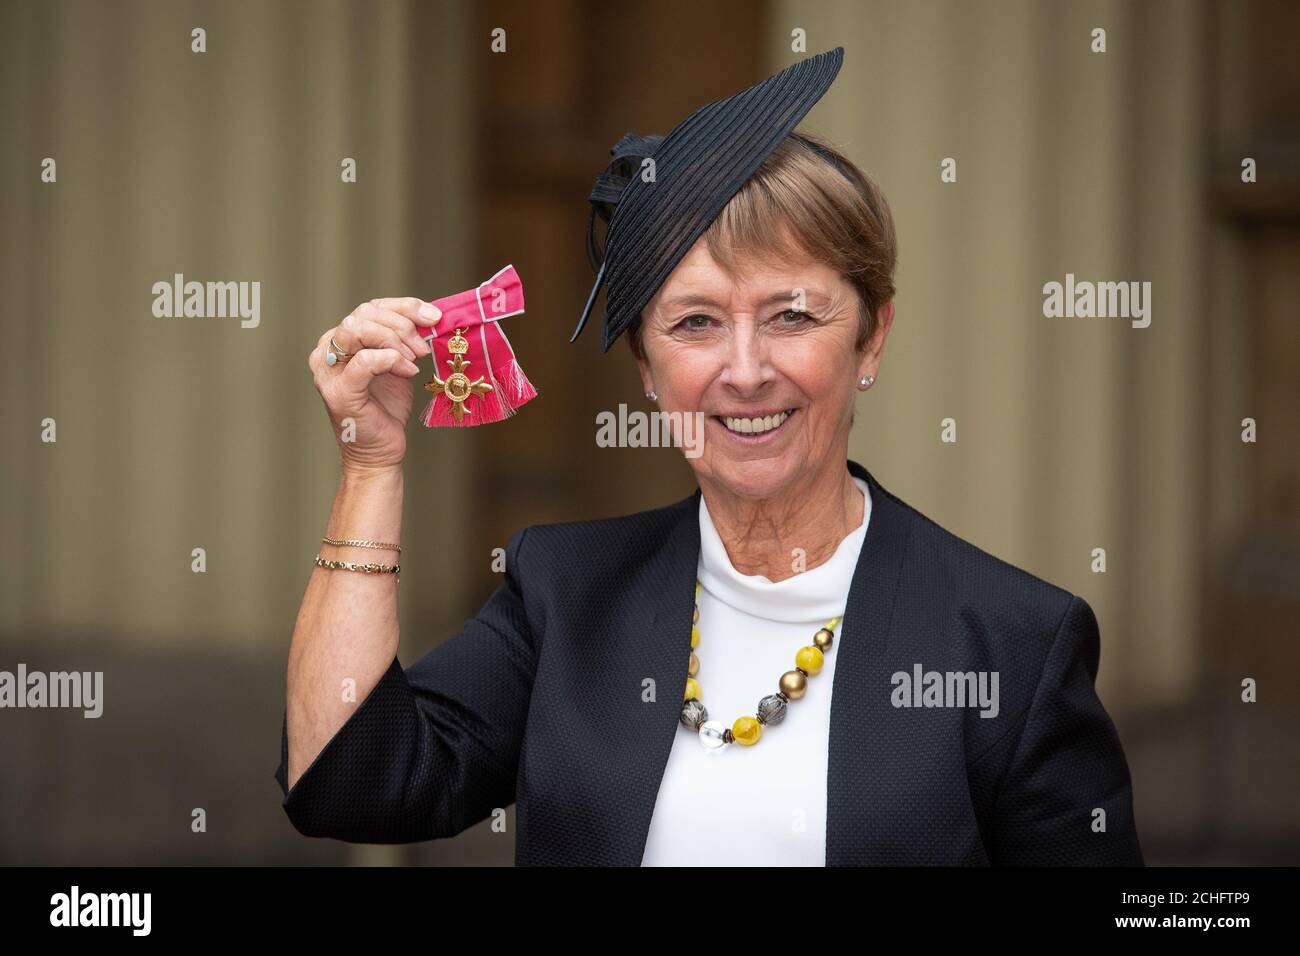 Sheila Morrow avec sa médaille OBE, à la suite d'une cérémonie d'investiture à Buckingham Palace, Londres. Photo PA. Date de la photo: Jeudi 21 novembre 2019. Voir l'histoire de PA LES investitures ROYALES. Le crédit photo devrait se lire comme suit : Dominic Lipinski/PA Wire Banque D'Images